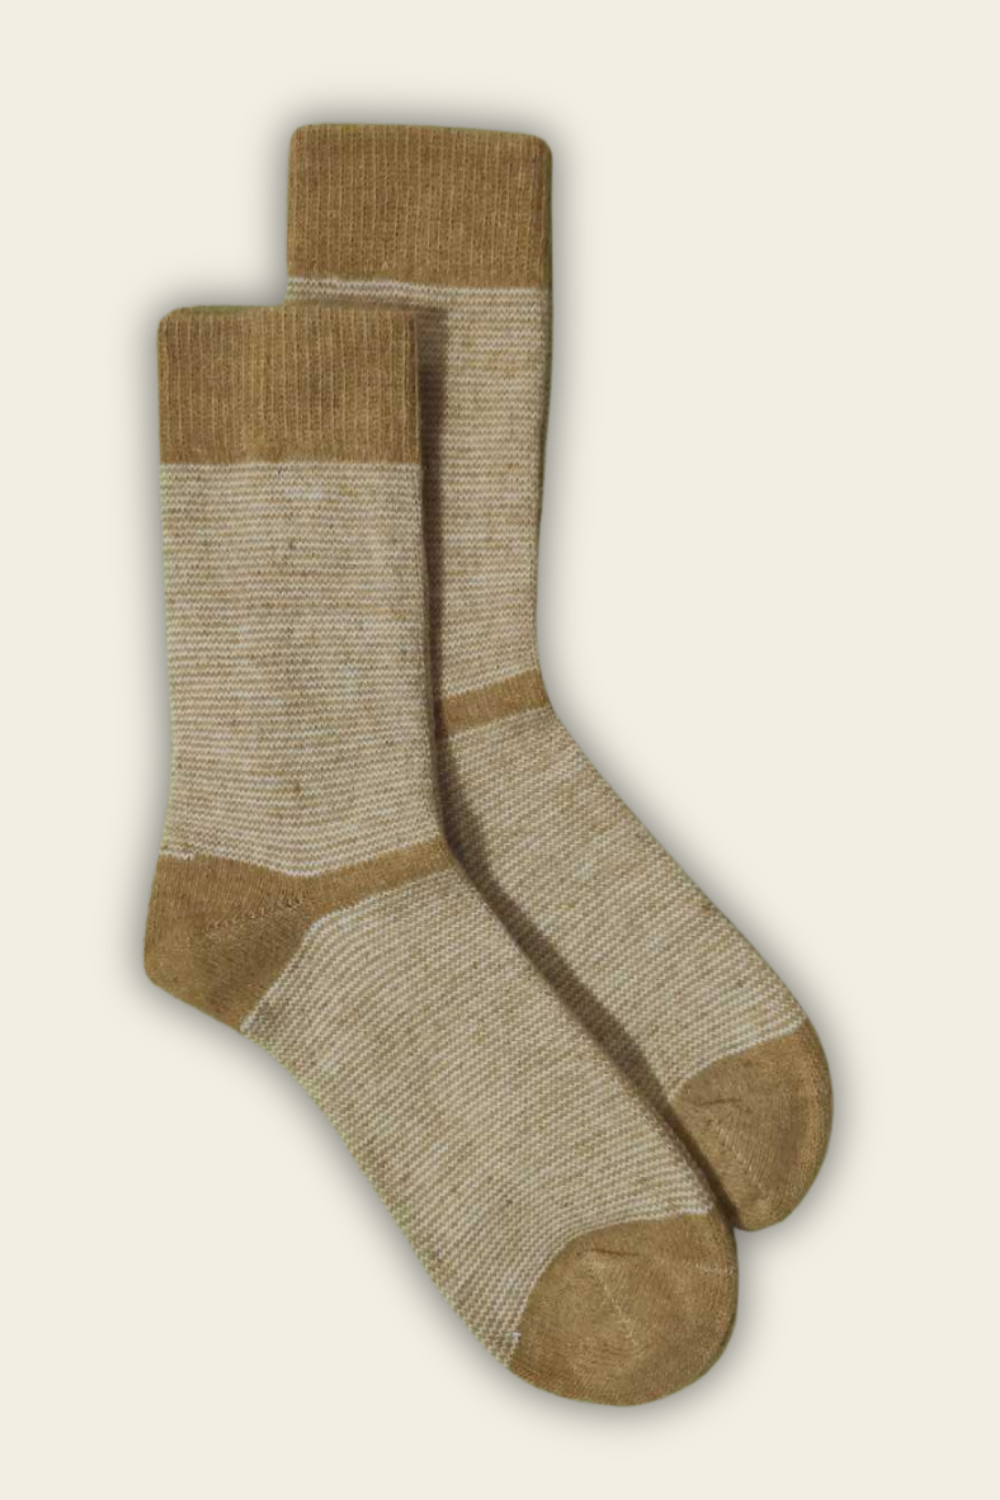 Socks with Alpaca and Merino Wool - dark yellow - 2 pairs